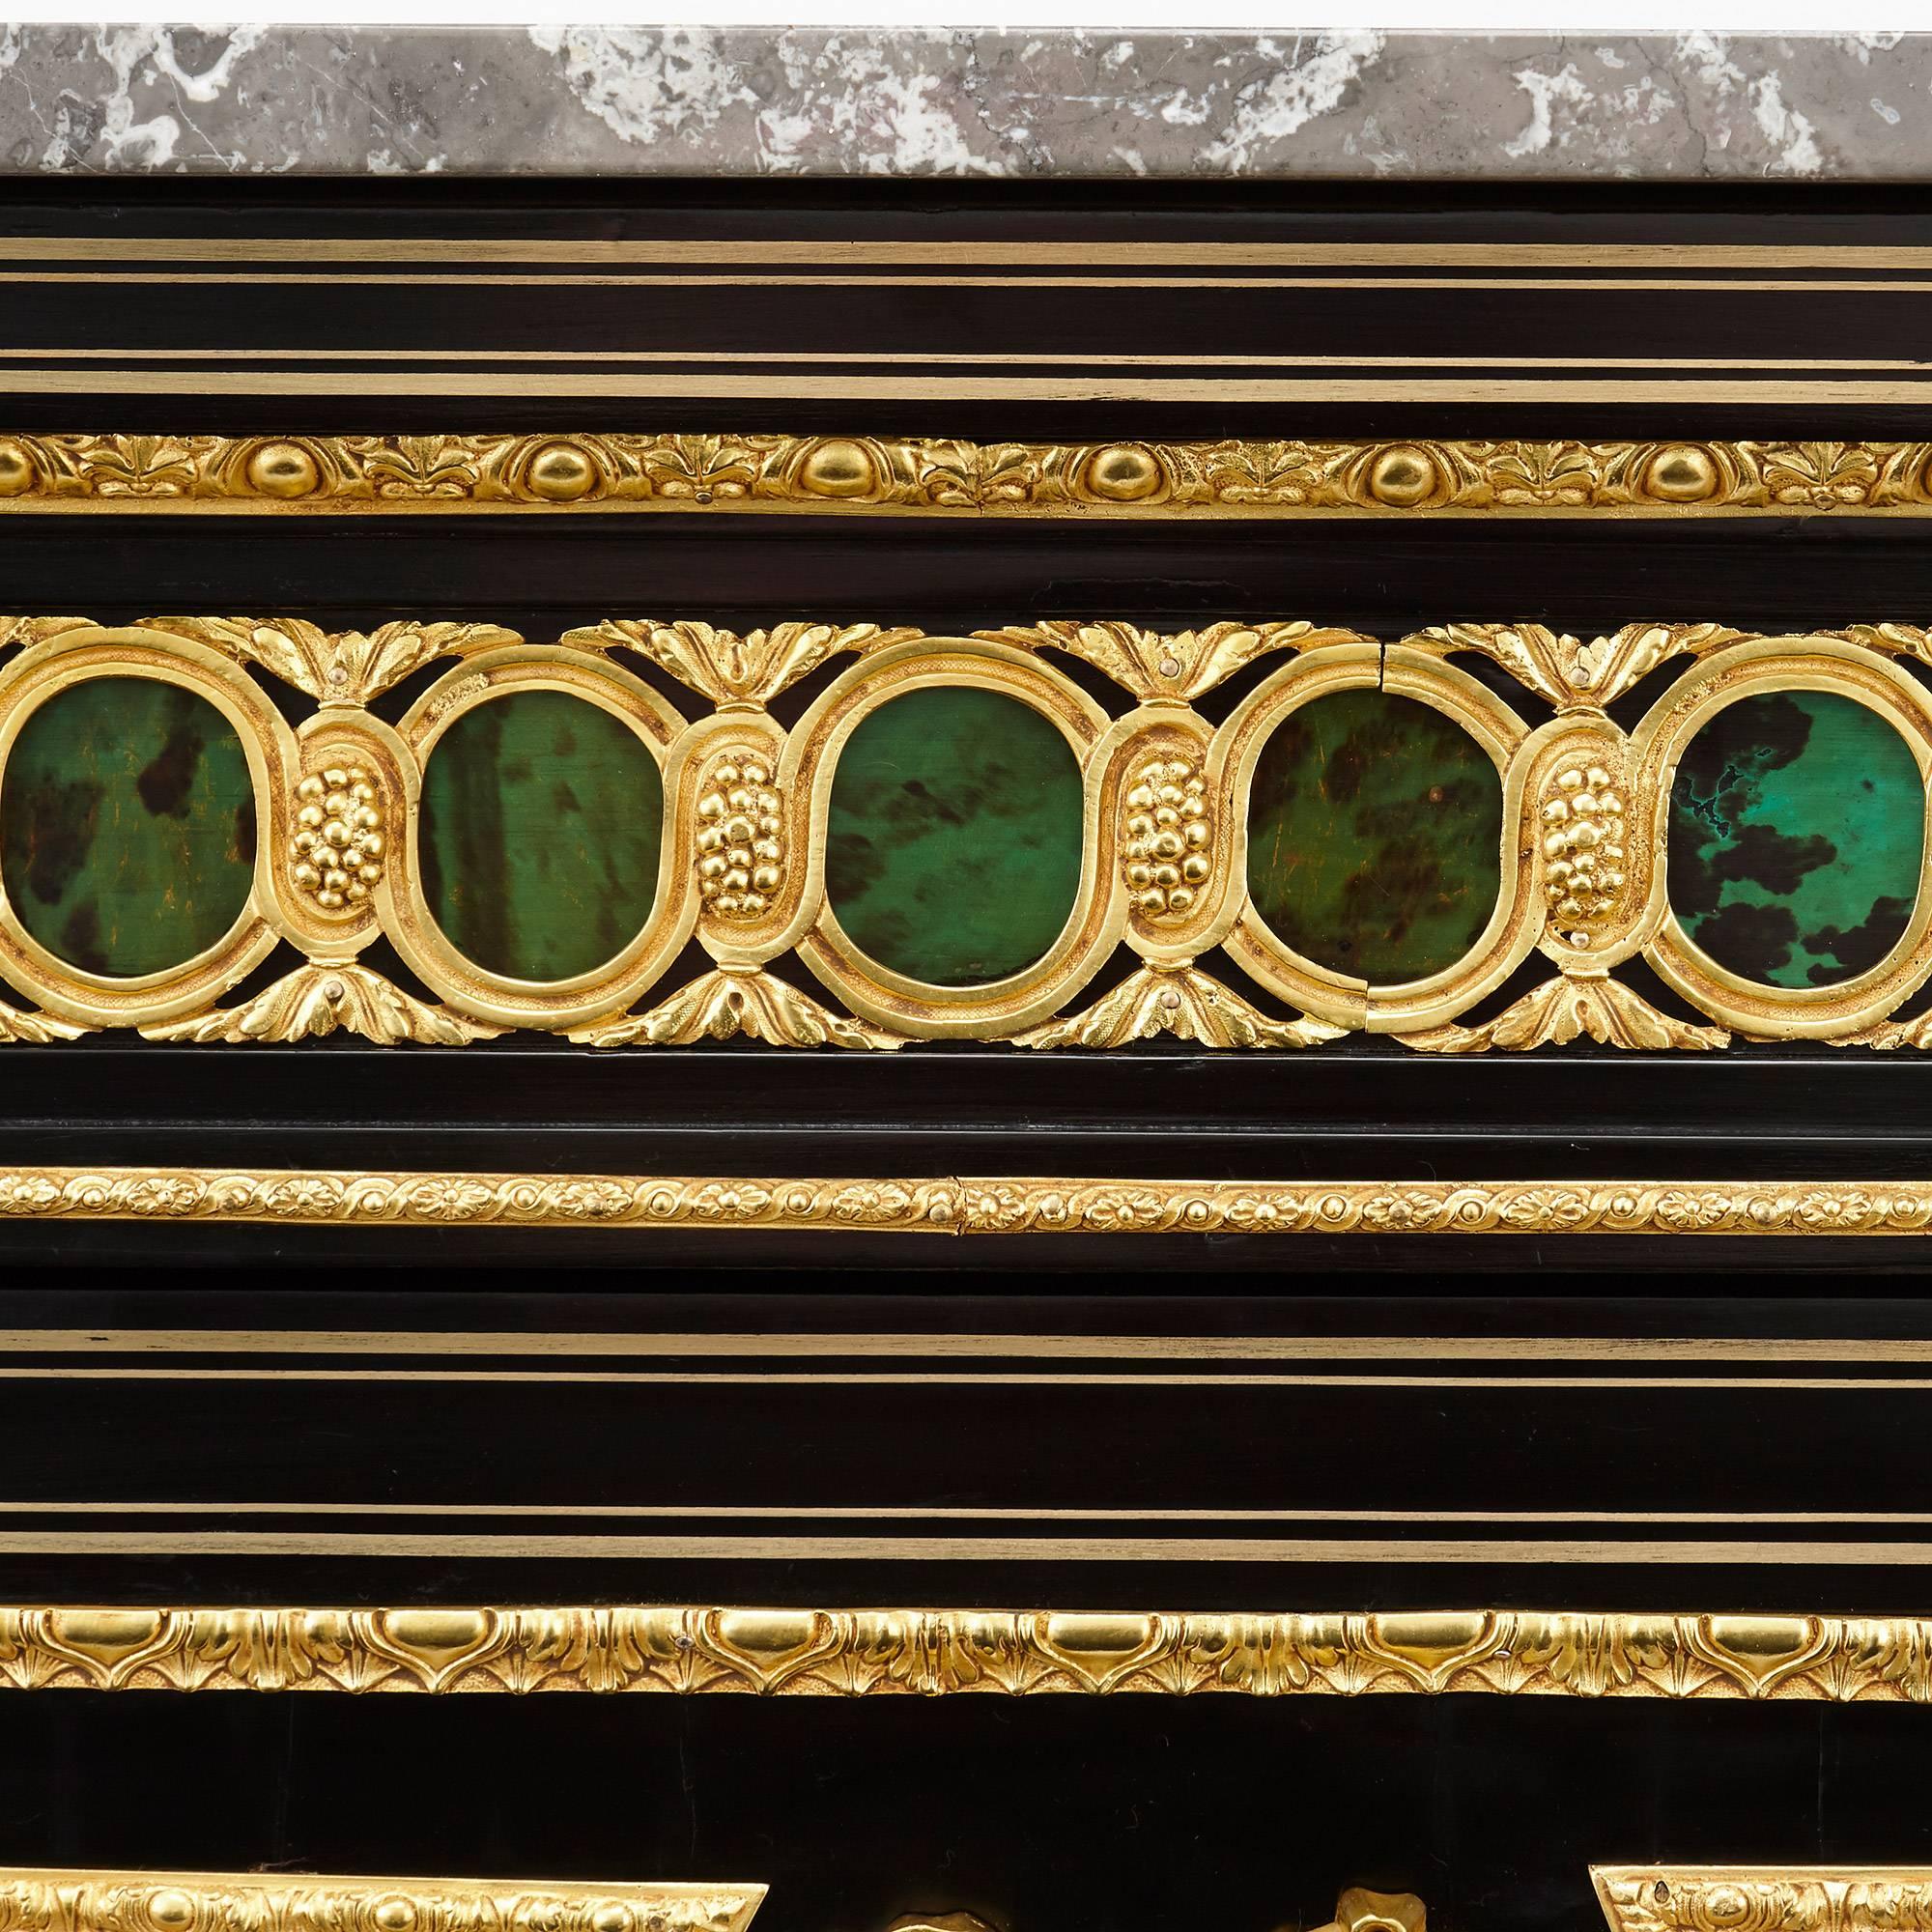 Napoleon III Period Marble, Hardstone, Ebonized Wood and Ormolu-Mounted Cabinet 1